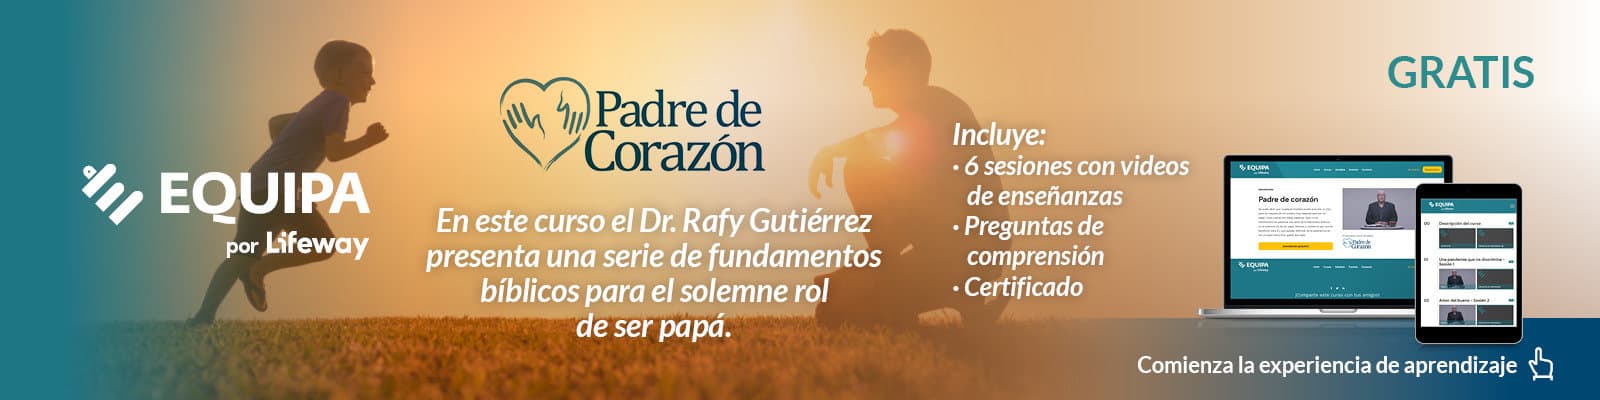 Equipa por Lifeway. En este curso el Dr. Rafy Gutiérrez presenta una serie de fundamentos bˆbilicos para el solemne rol de ser papá. Gratis.